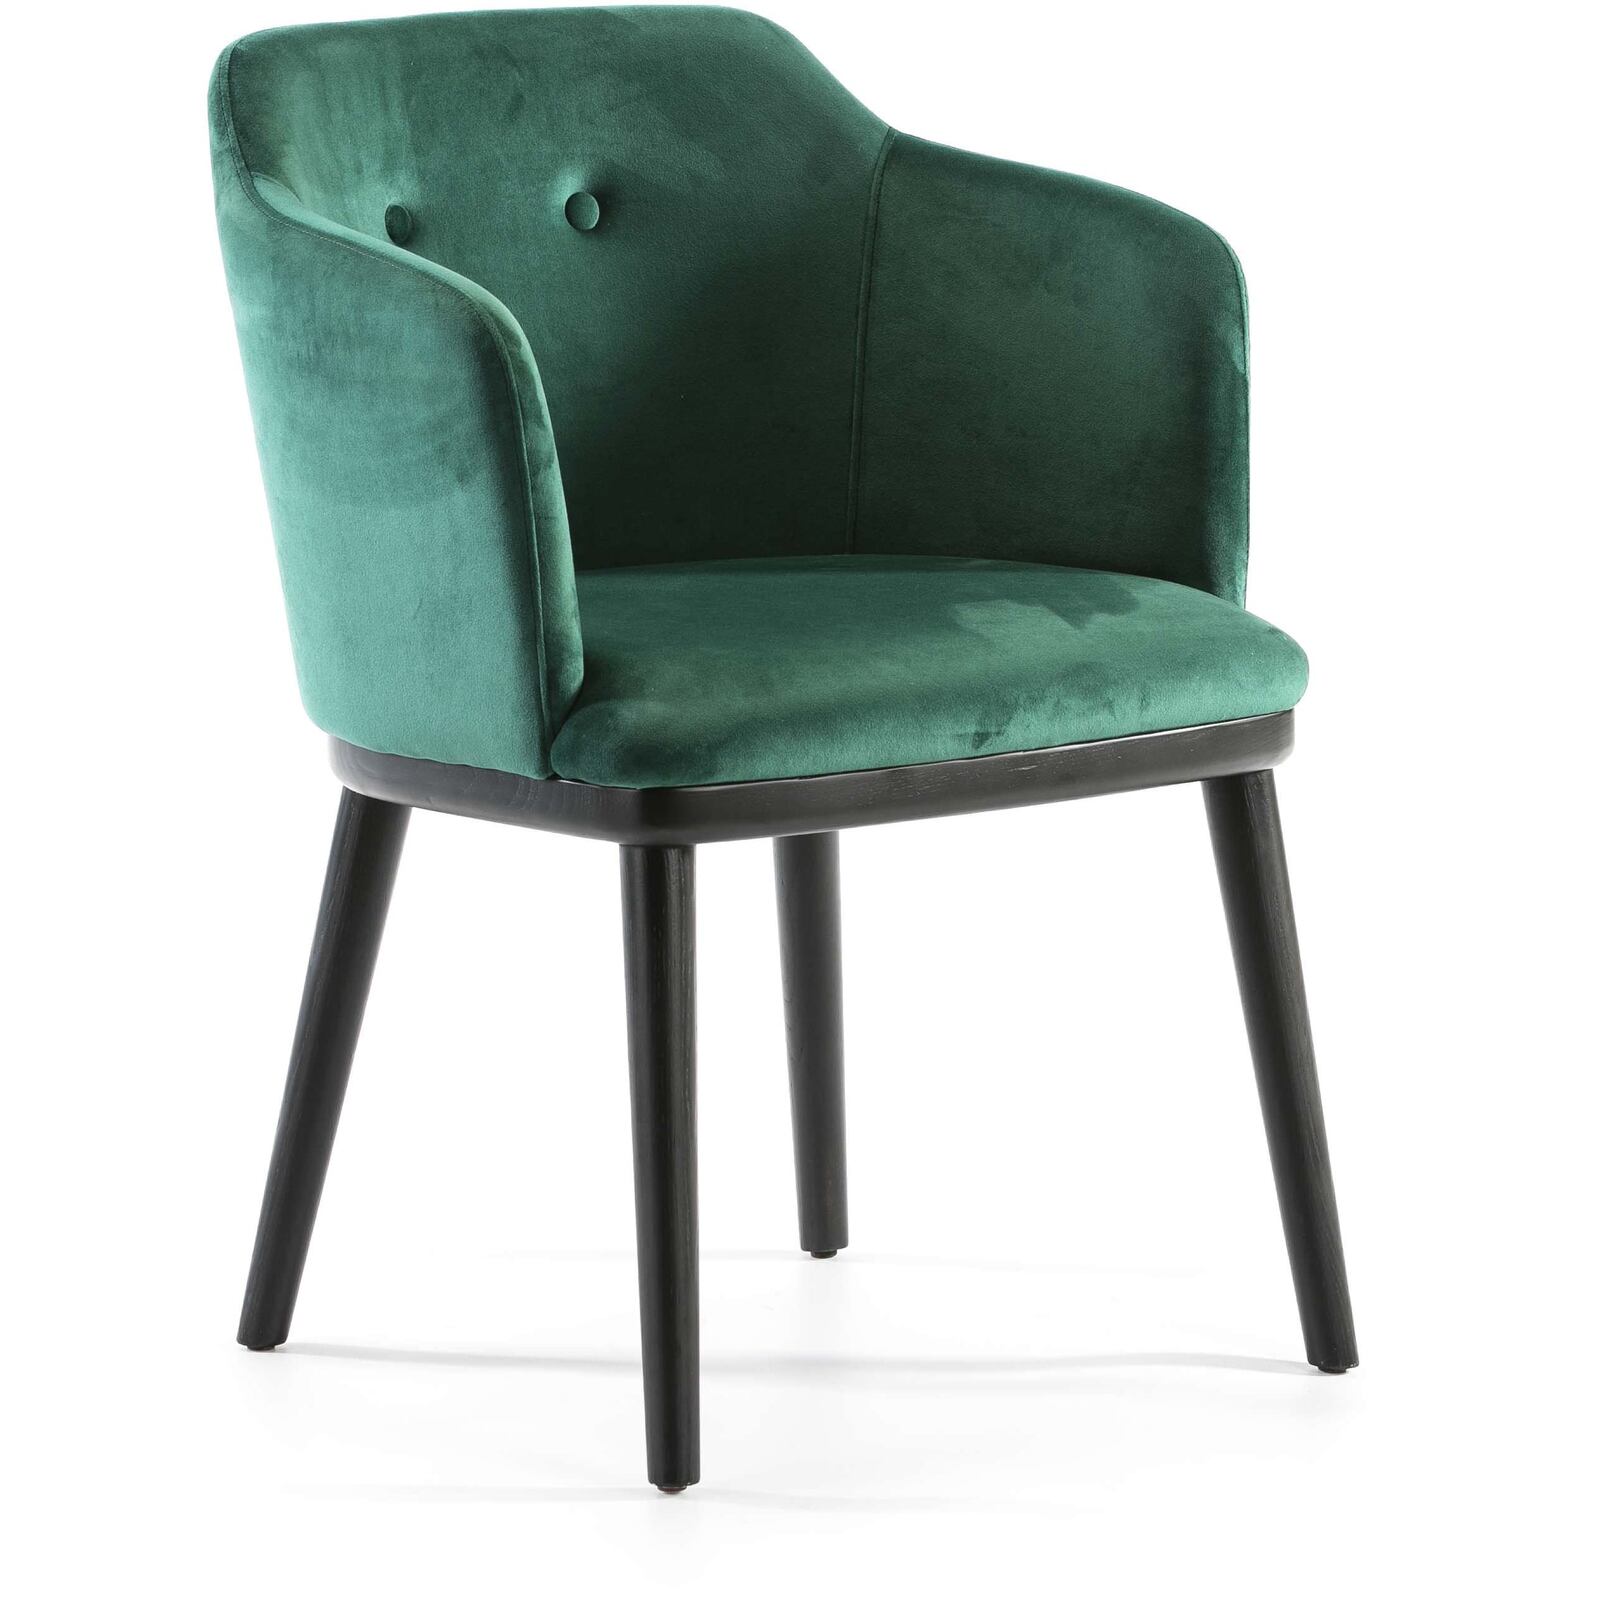 Fauteuil design rembourré couleur assise vert pieds noir